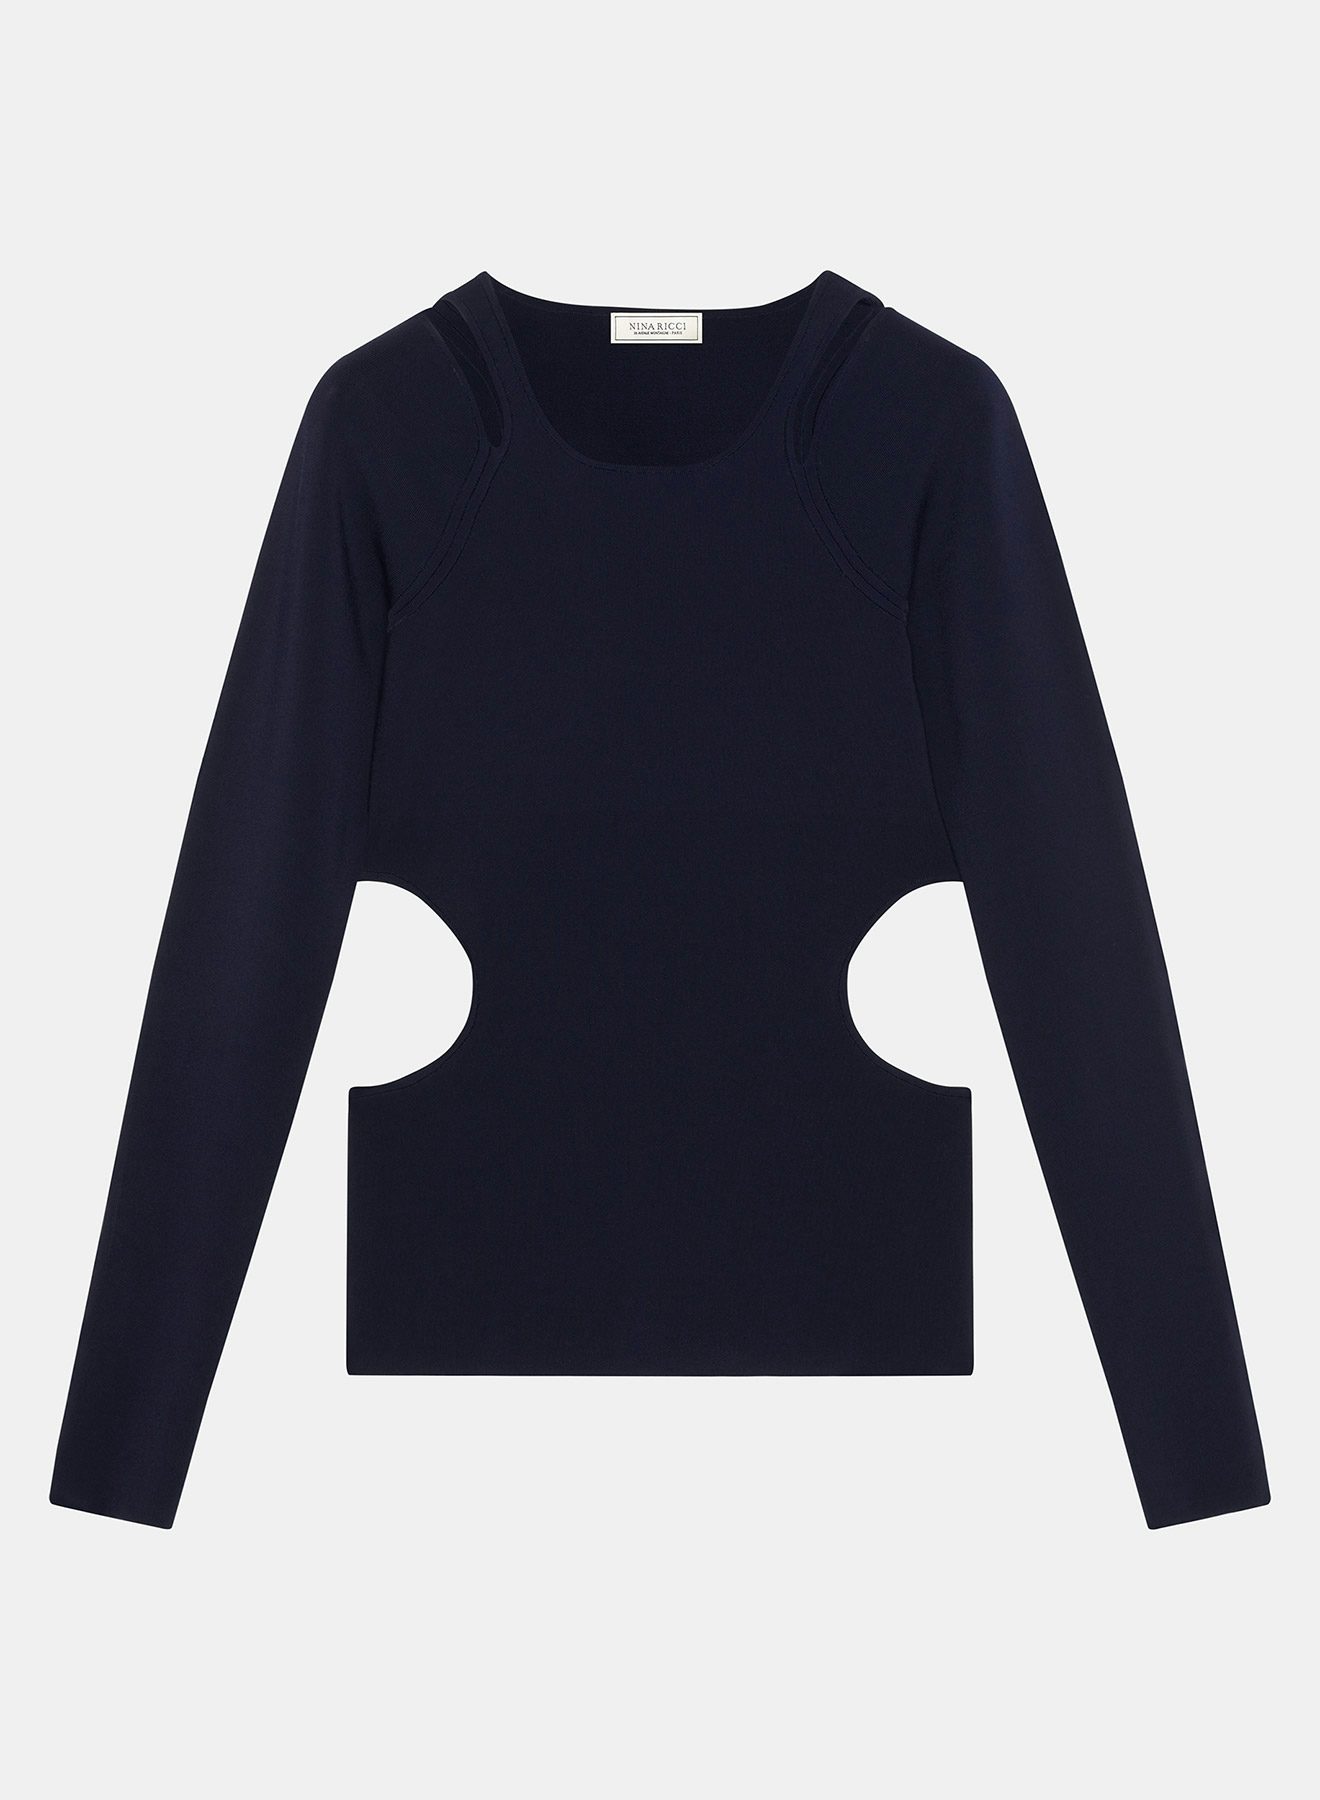 Navy blue Milano sweater open at the hips - Nina Ricci